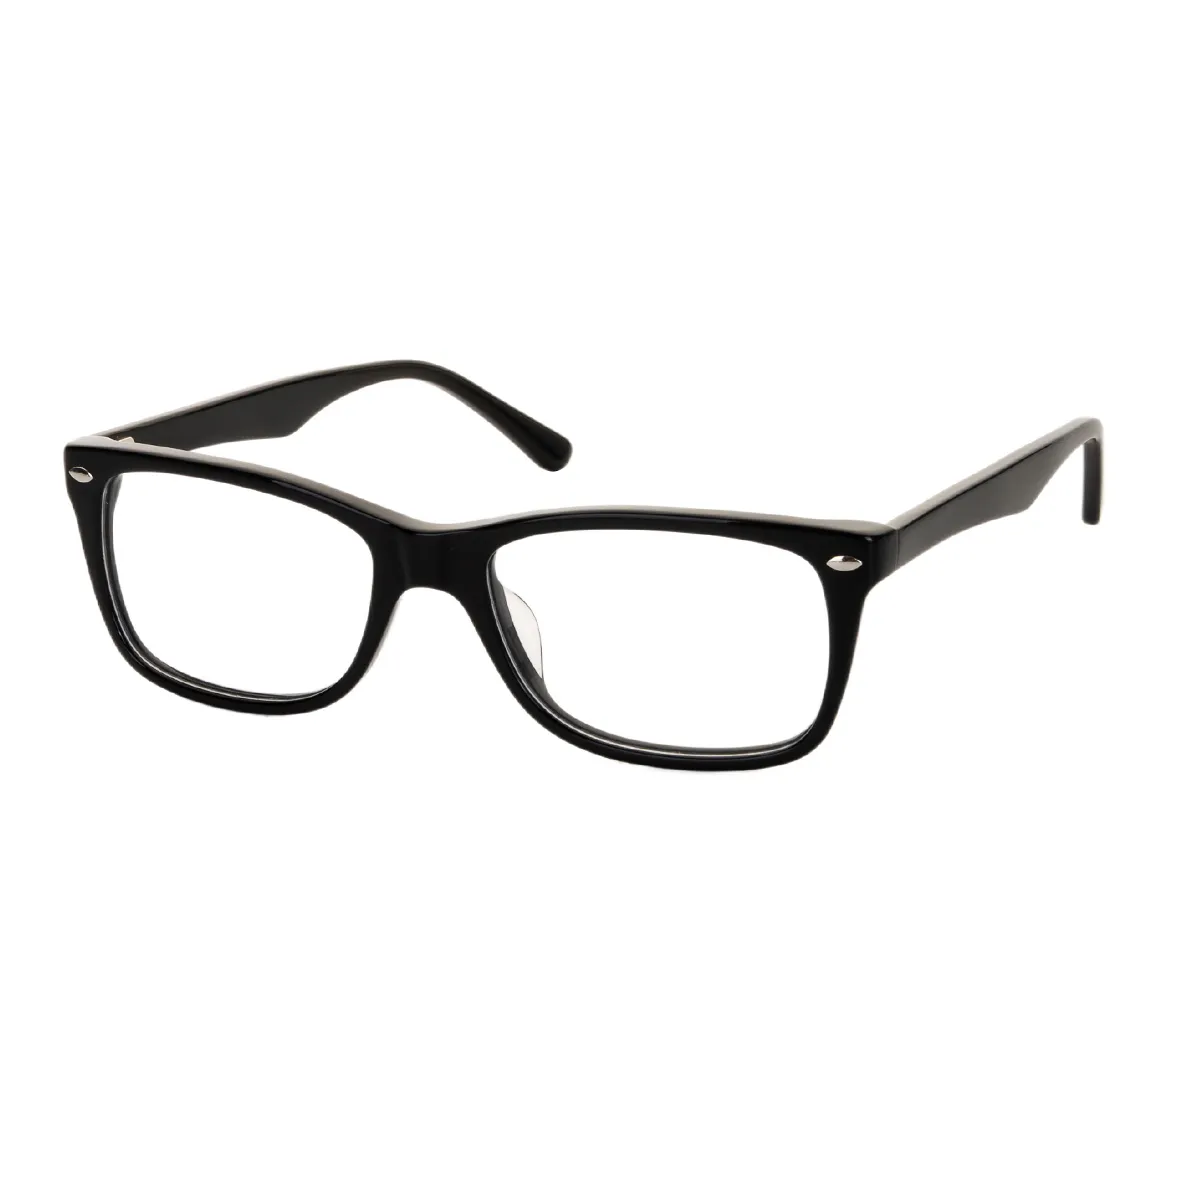 Ken - Rectangle Black Glasses for Men & Women